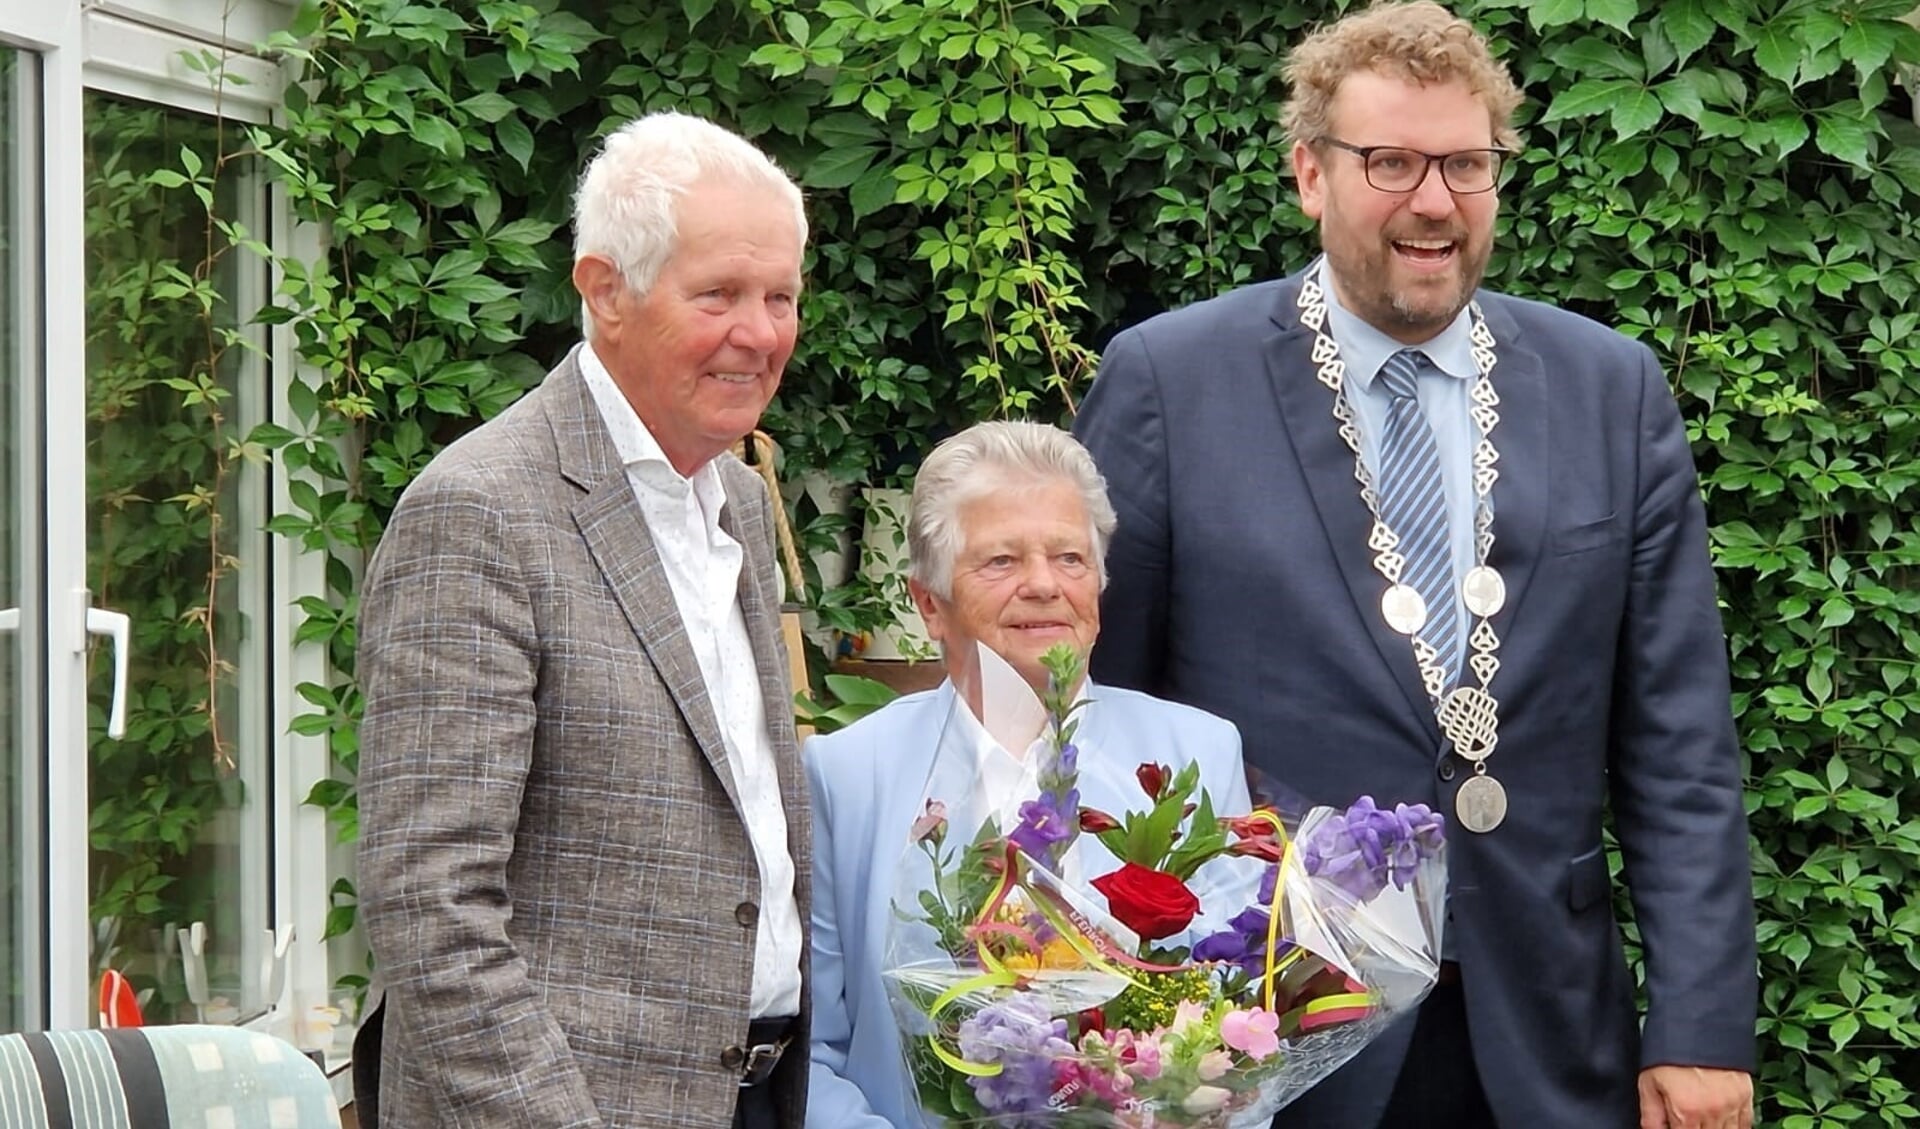 Hoog bezoek voor Jan en Nel, niemand minder dan burgemeester Poorter kwam hen persoonlijk feliciteren met hun diamanten trouwdag.